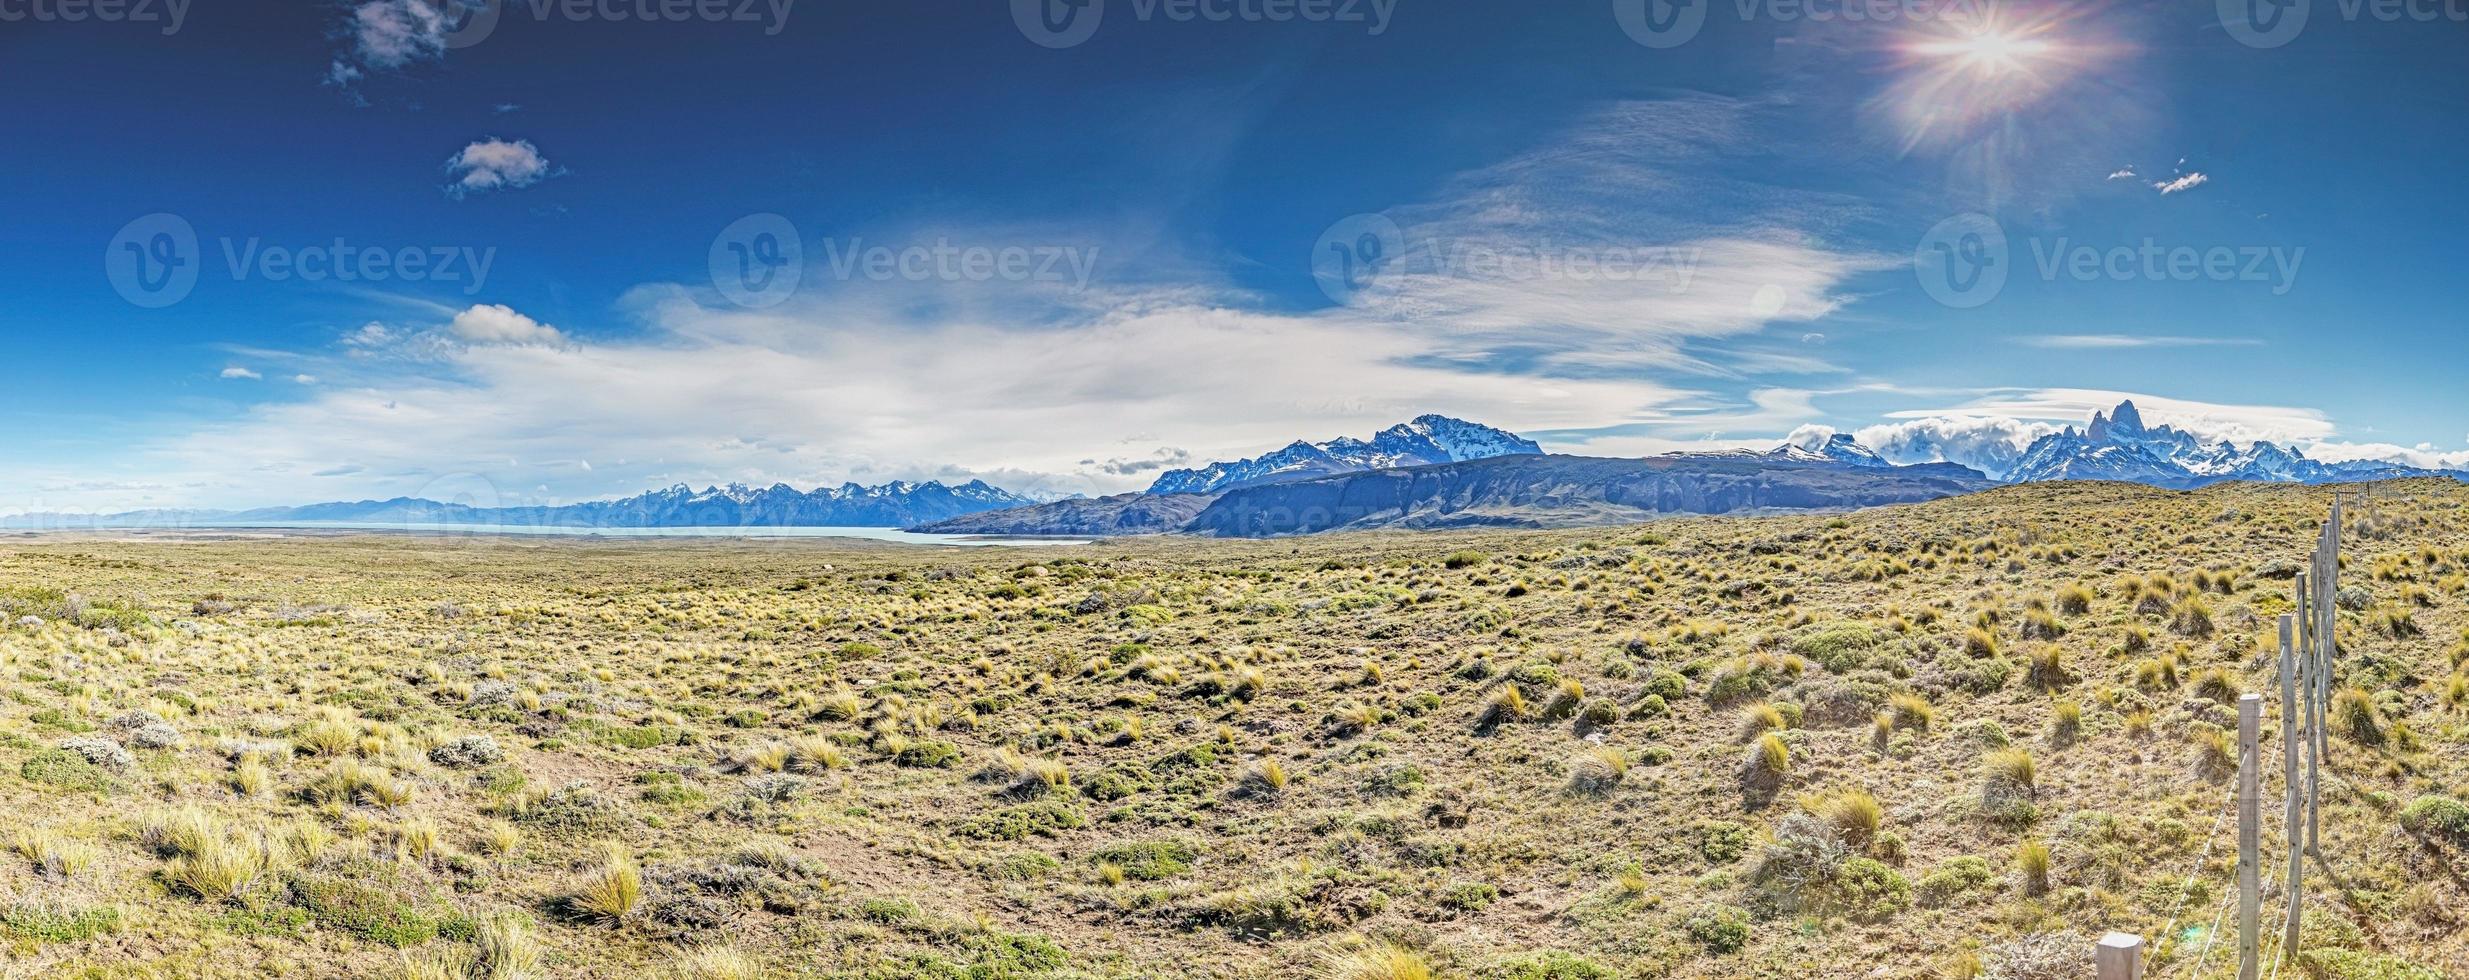 image panoramique sur la steppe argentine avec vue sur la chaîne de montagnes de patagonie avec cerro torre et mont fitz roy photo